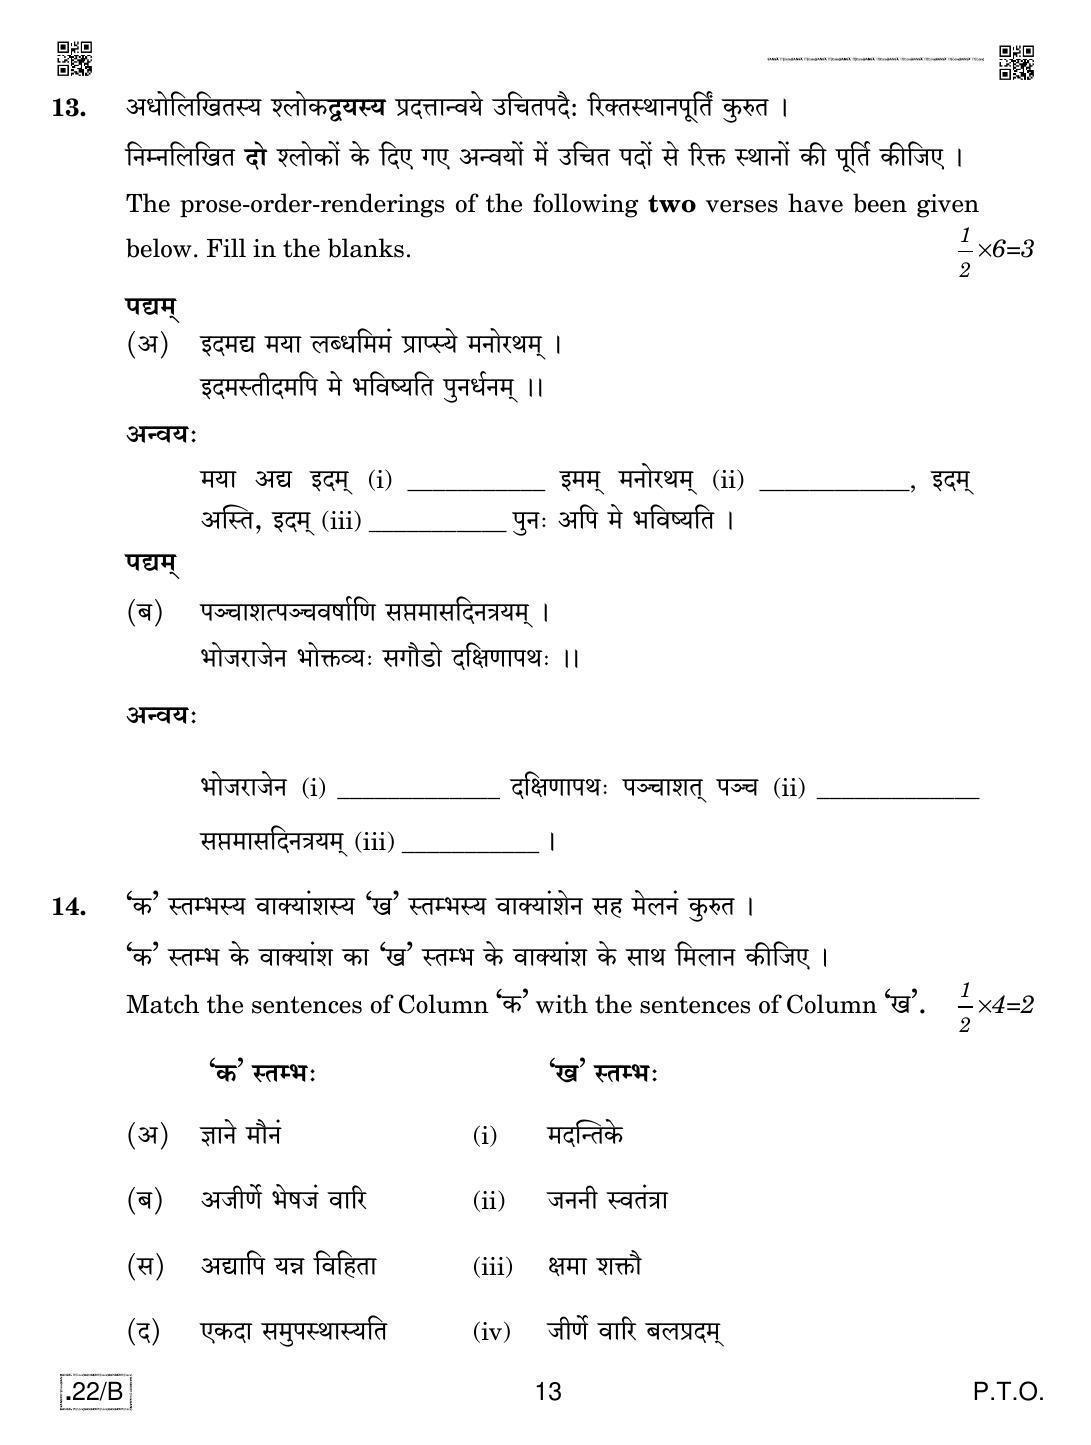 CBSE Class 12 Sanskrit Core 2020 Compartment Question Paper - Page 13